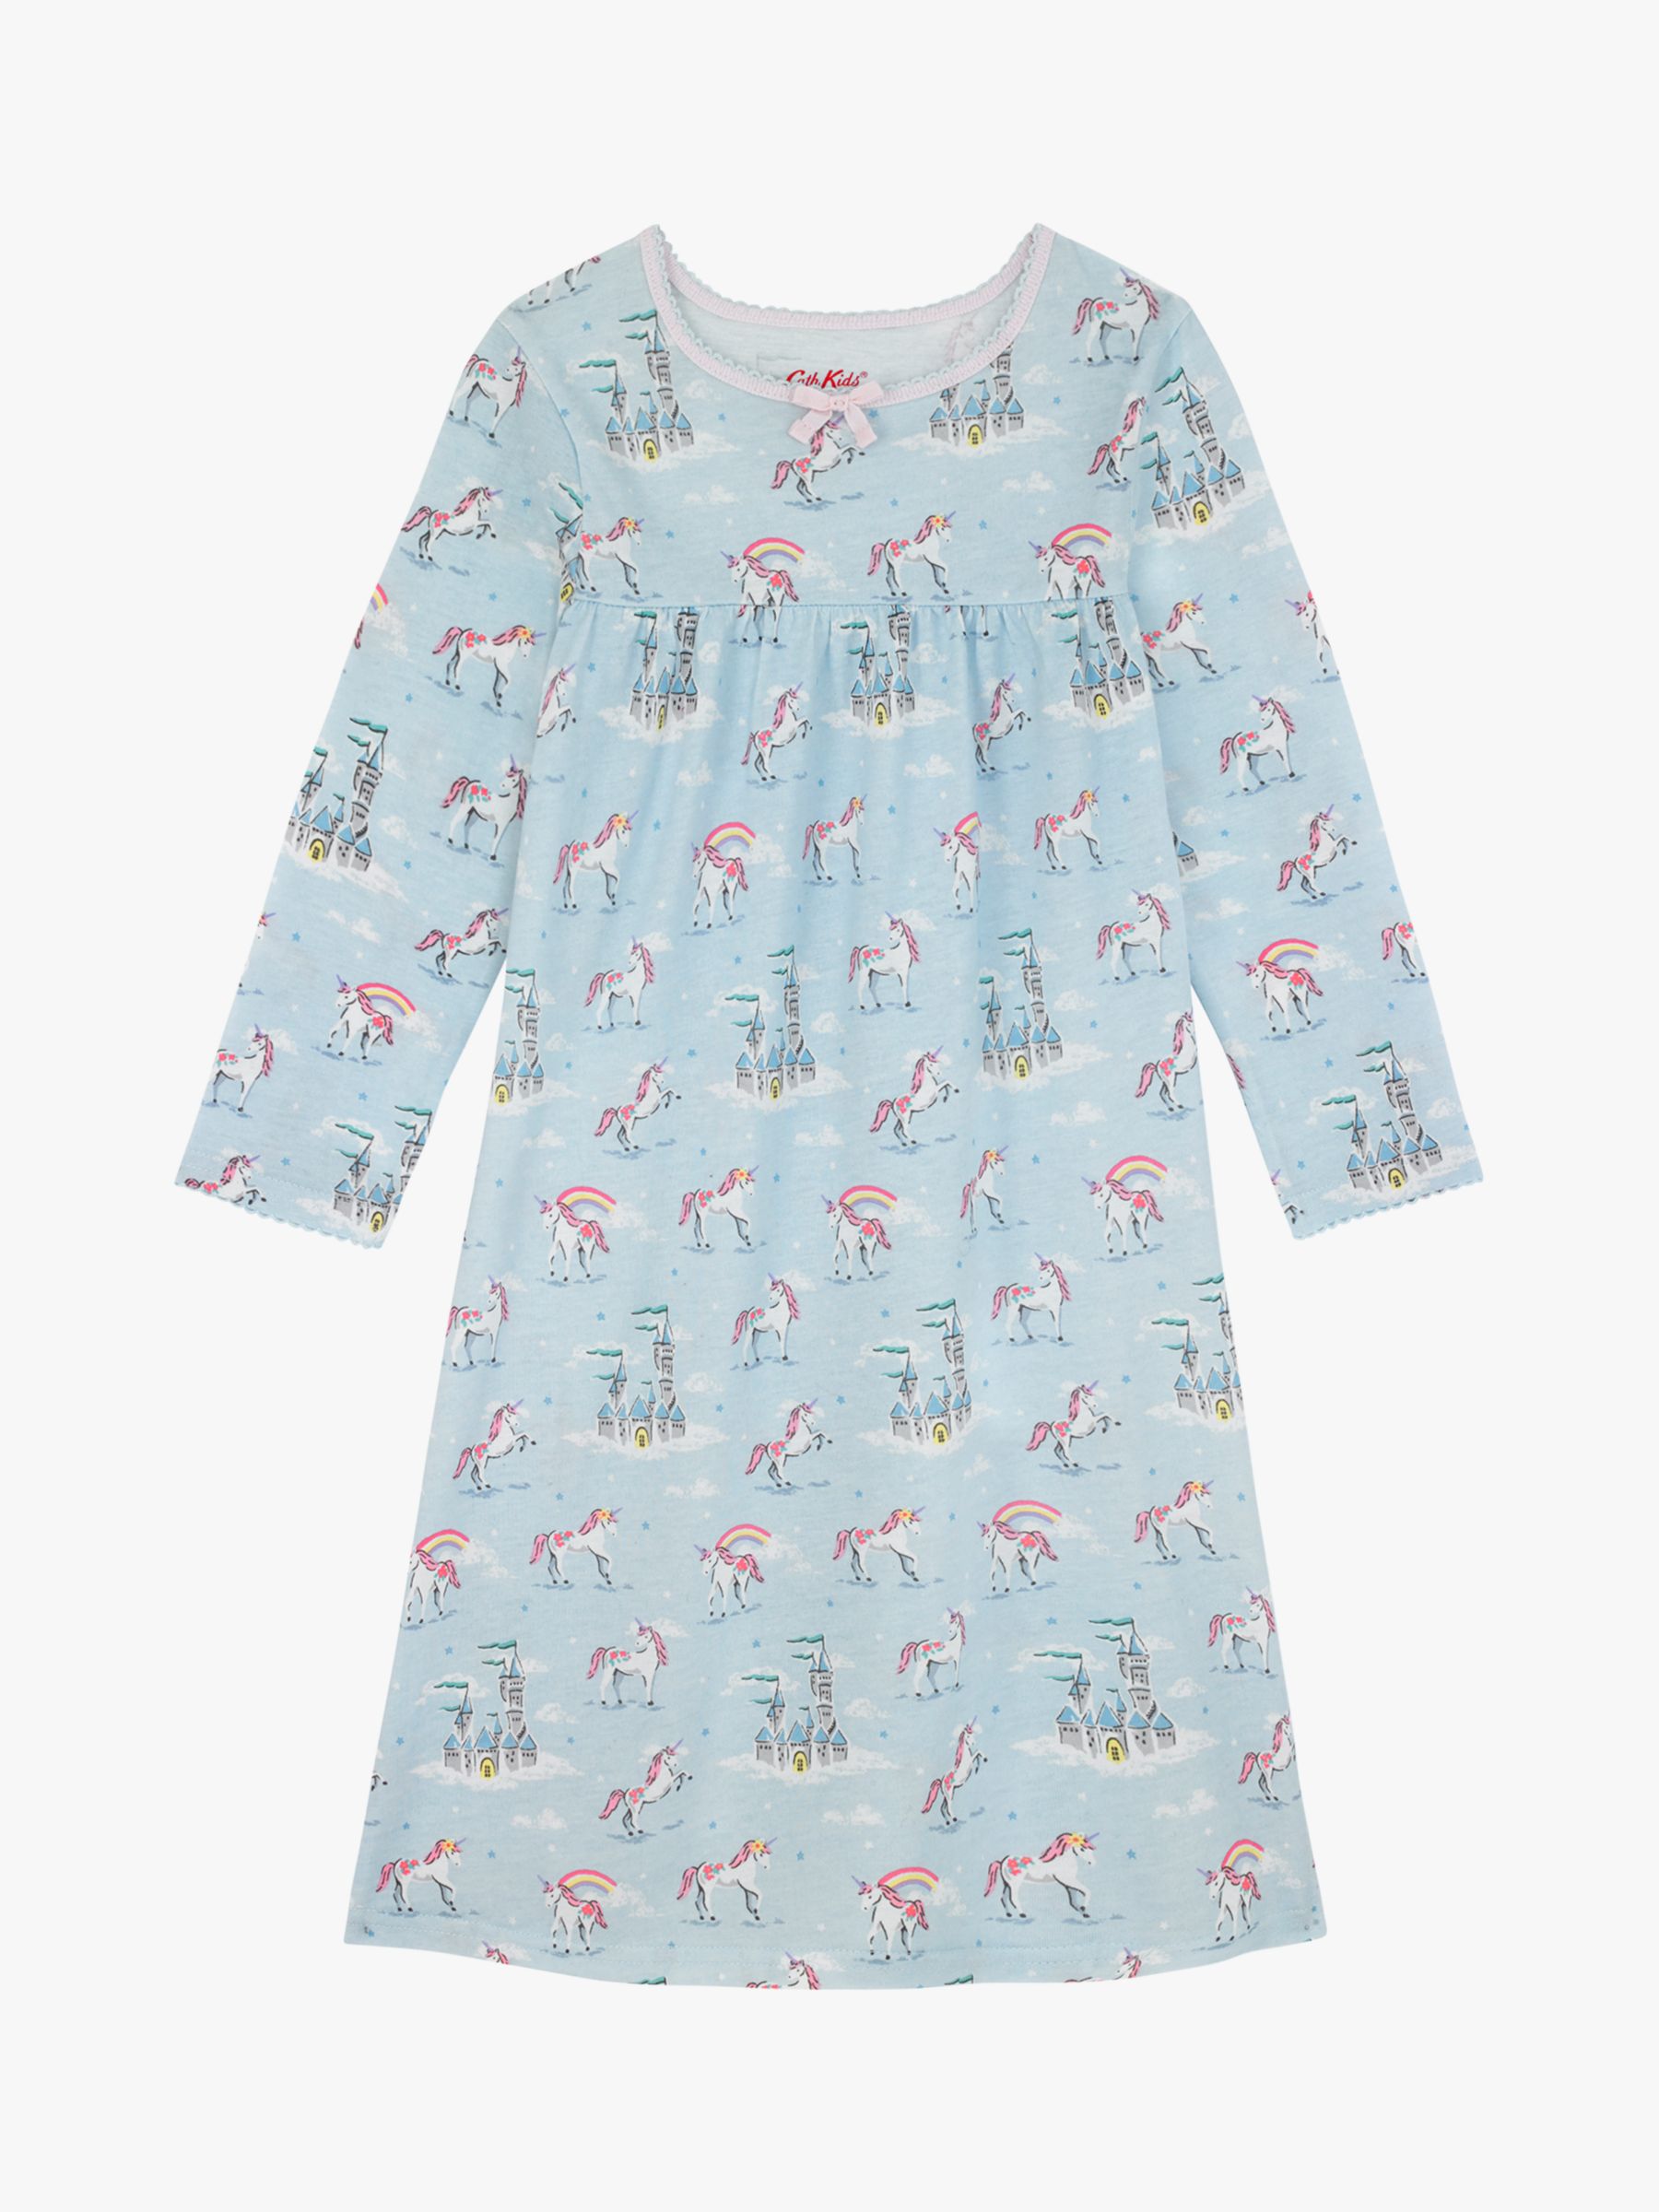 cath kidston unicorn pyjamas